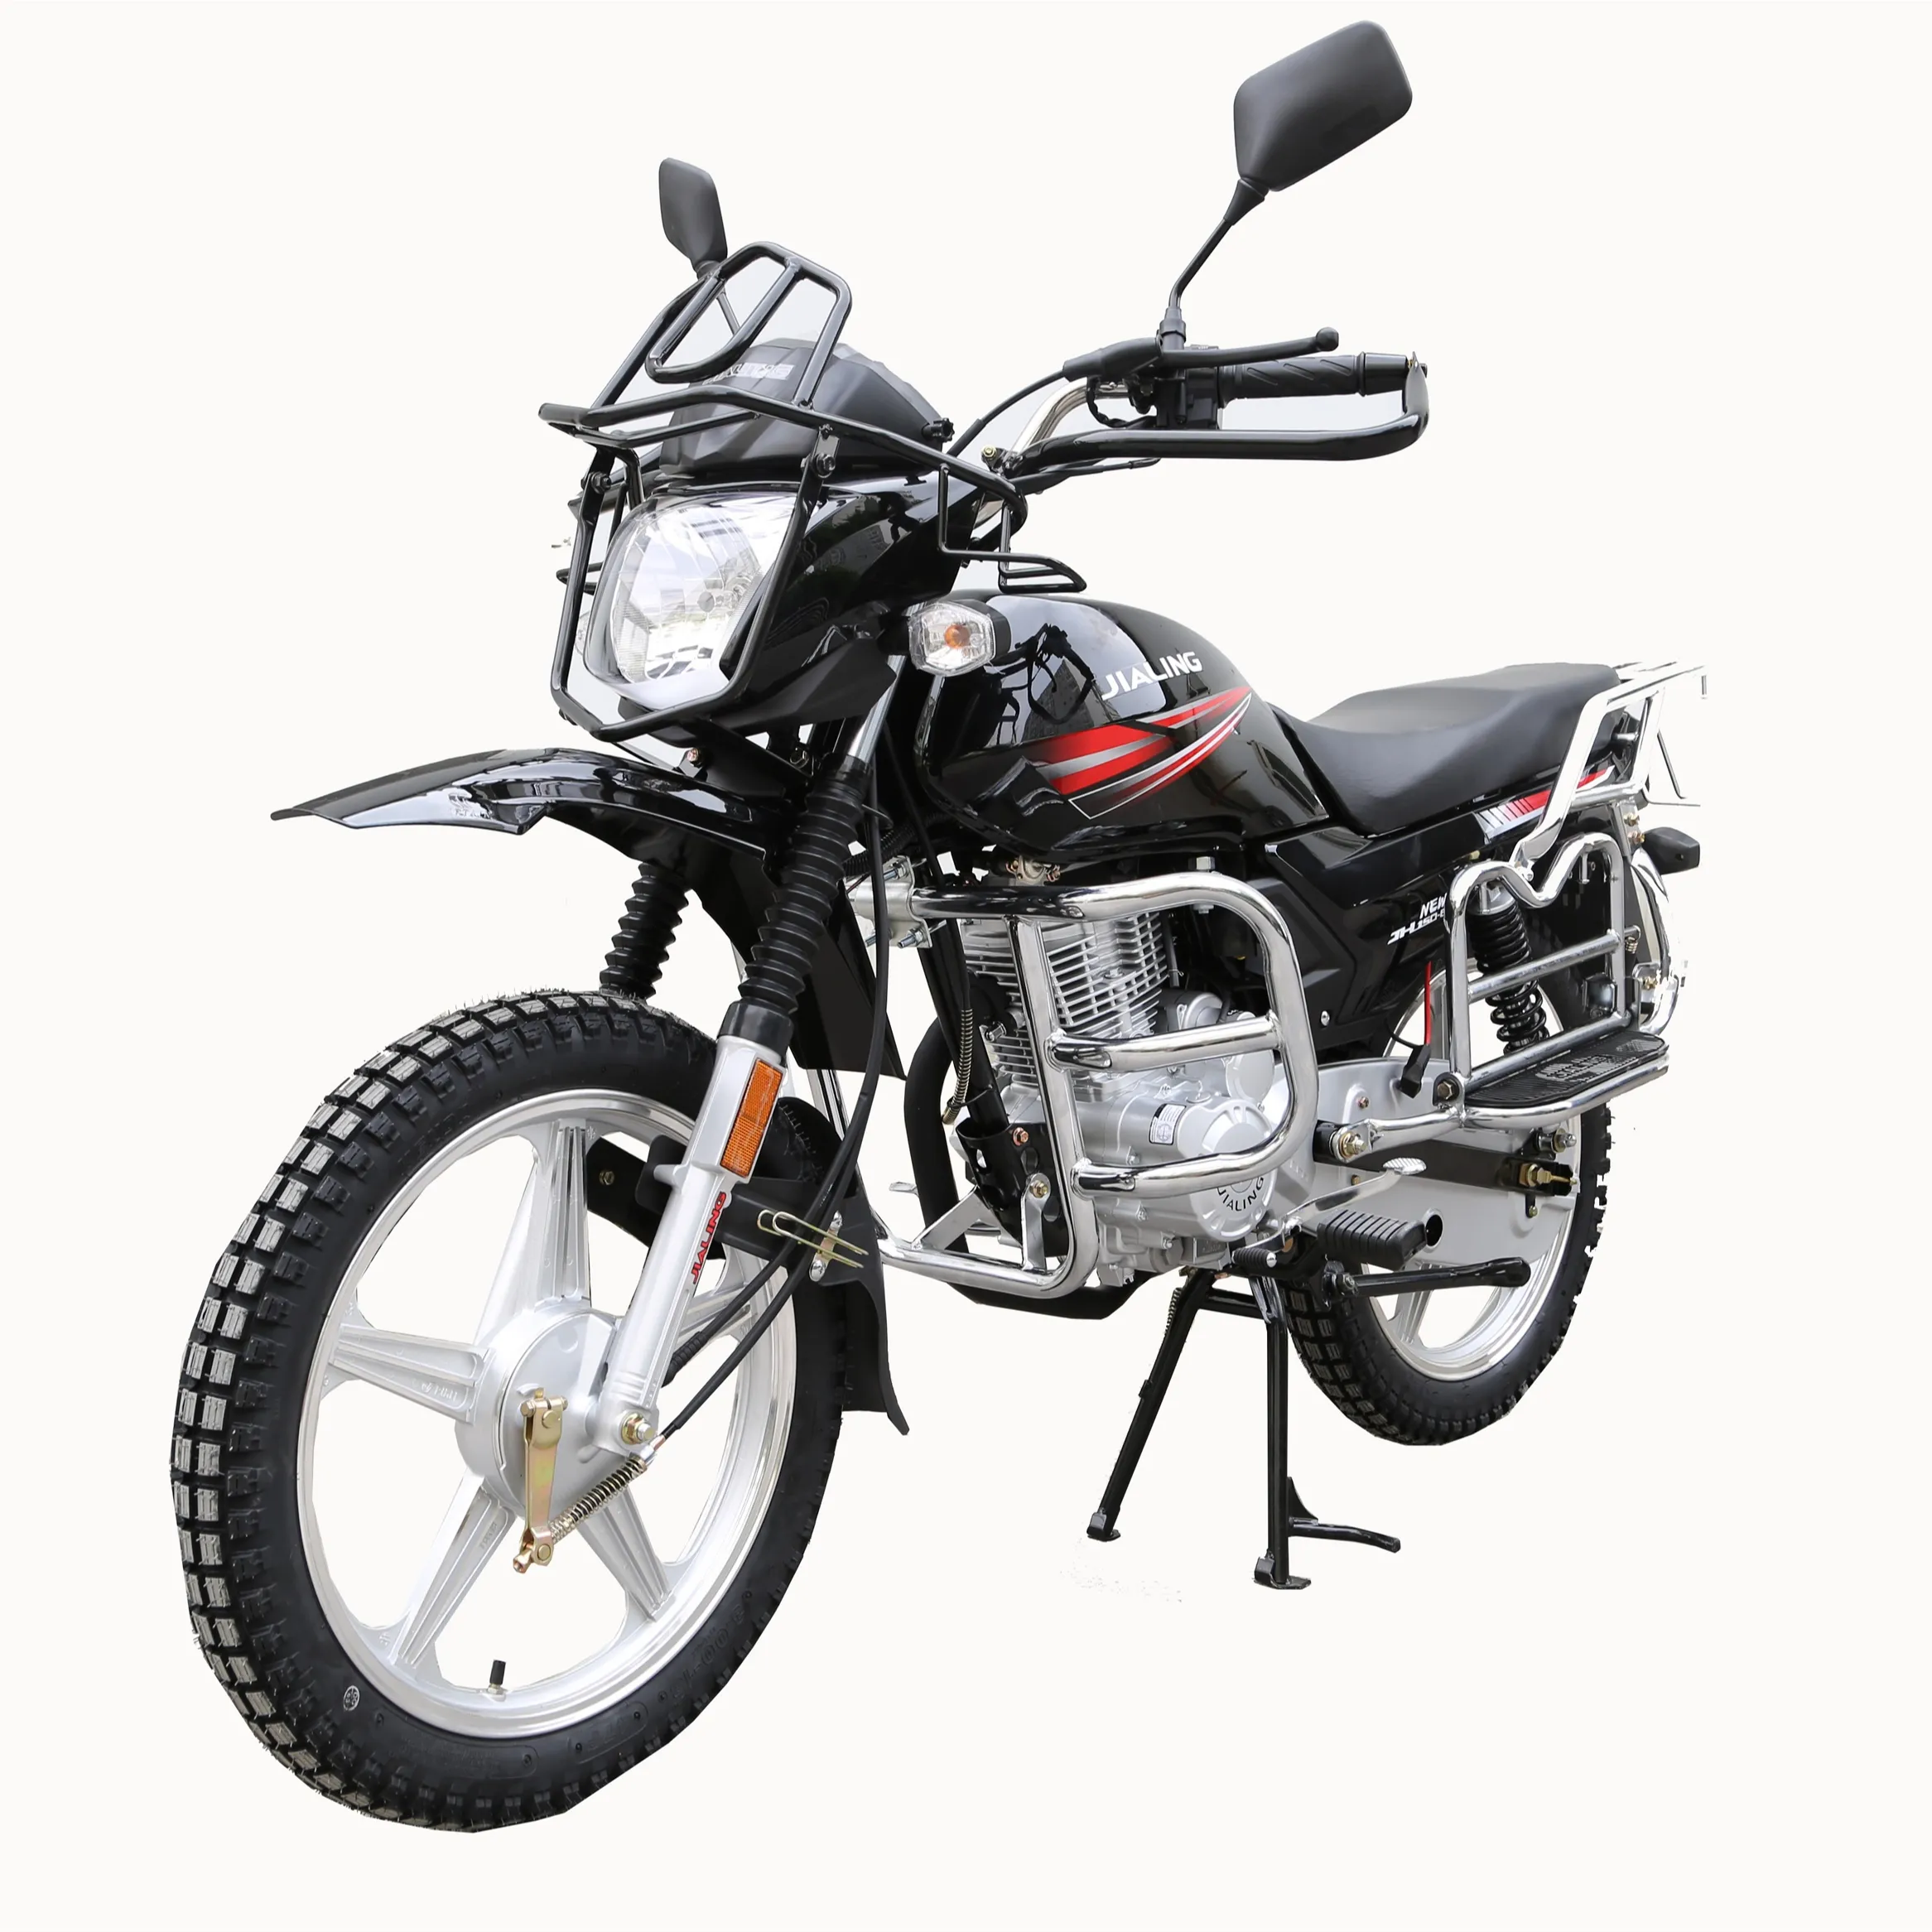 Jialing 125 cc dirt bike khác xe máy bền xe máy off-road xe máy thể thao xe máy